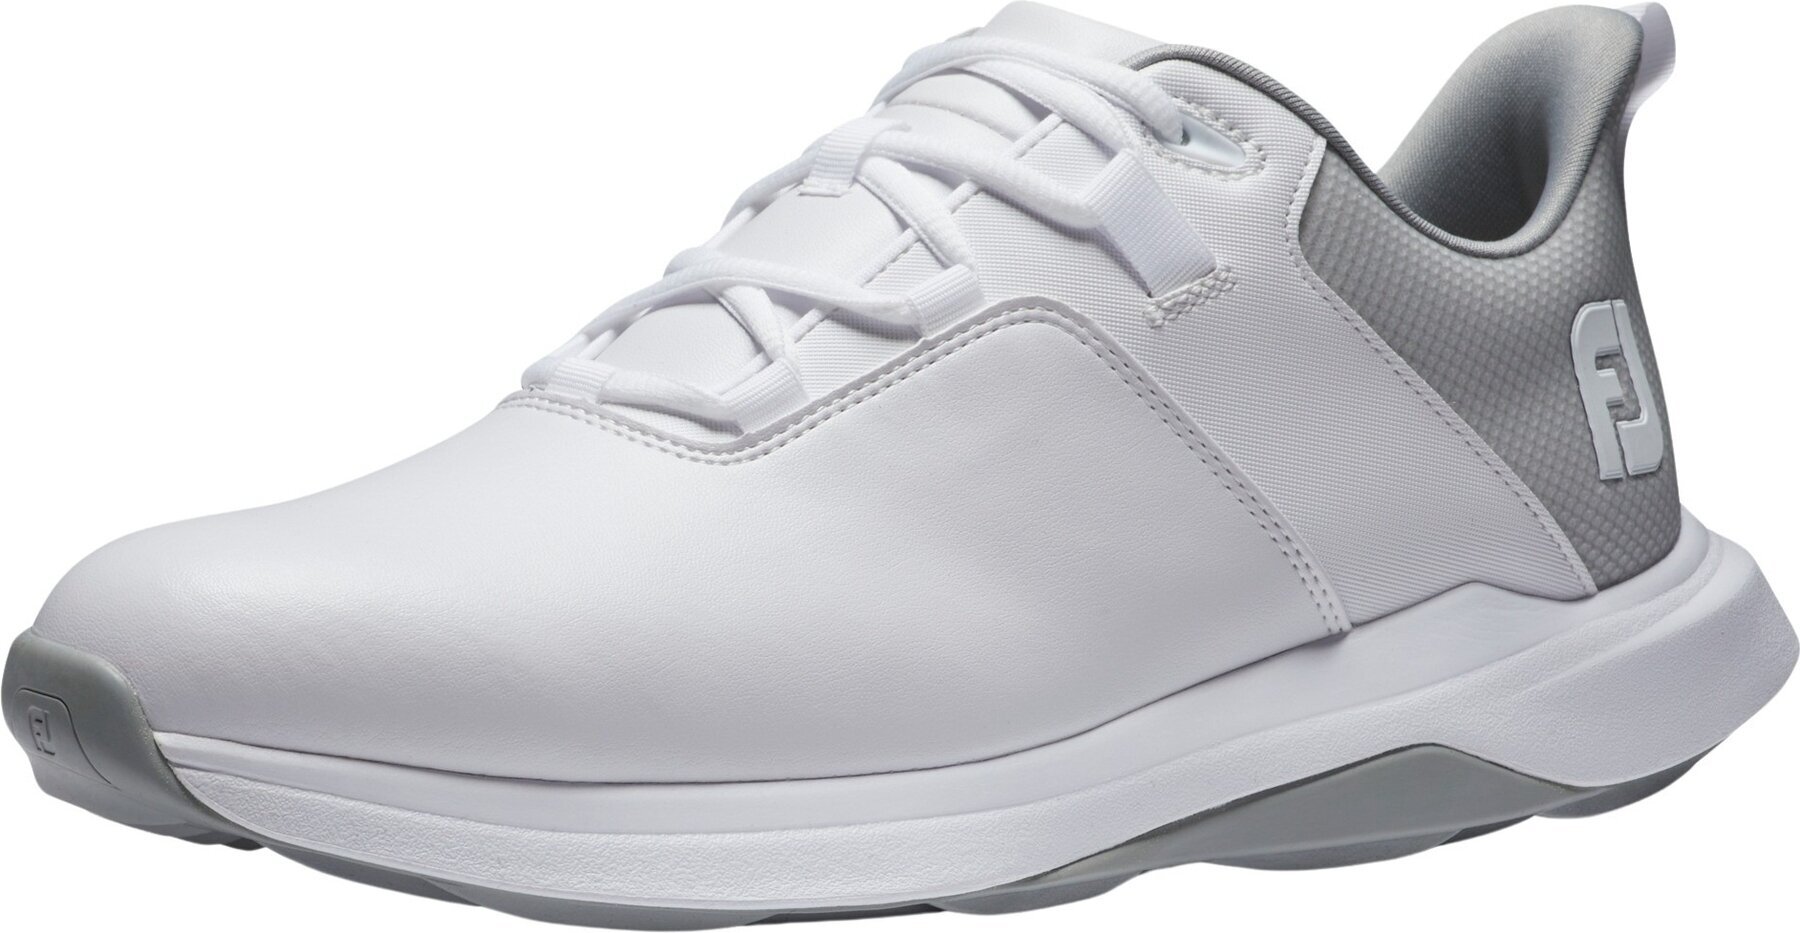 Chaussures de golf pour hommes Footjoy ProLite Mens Golf Shoes White/Grey 40,5